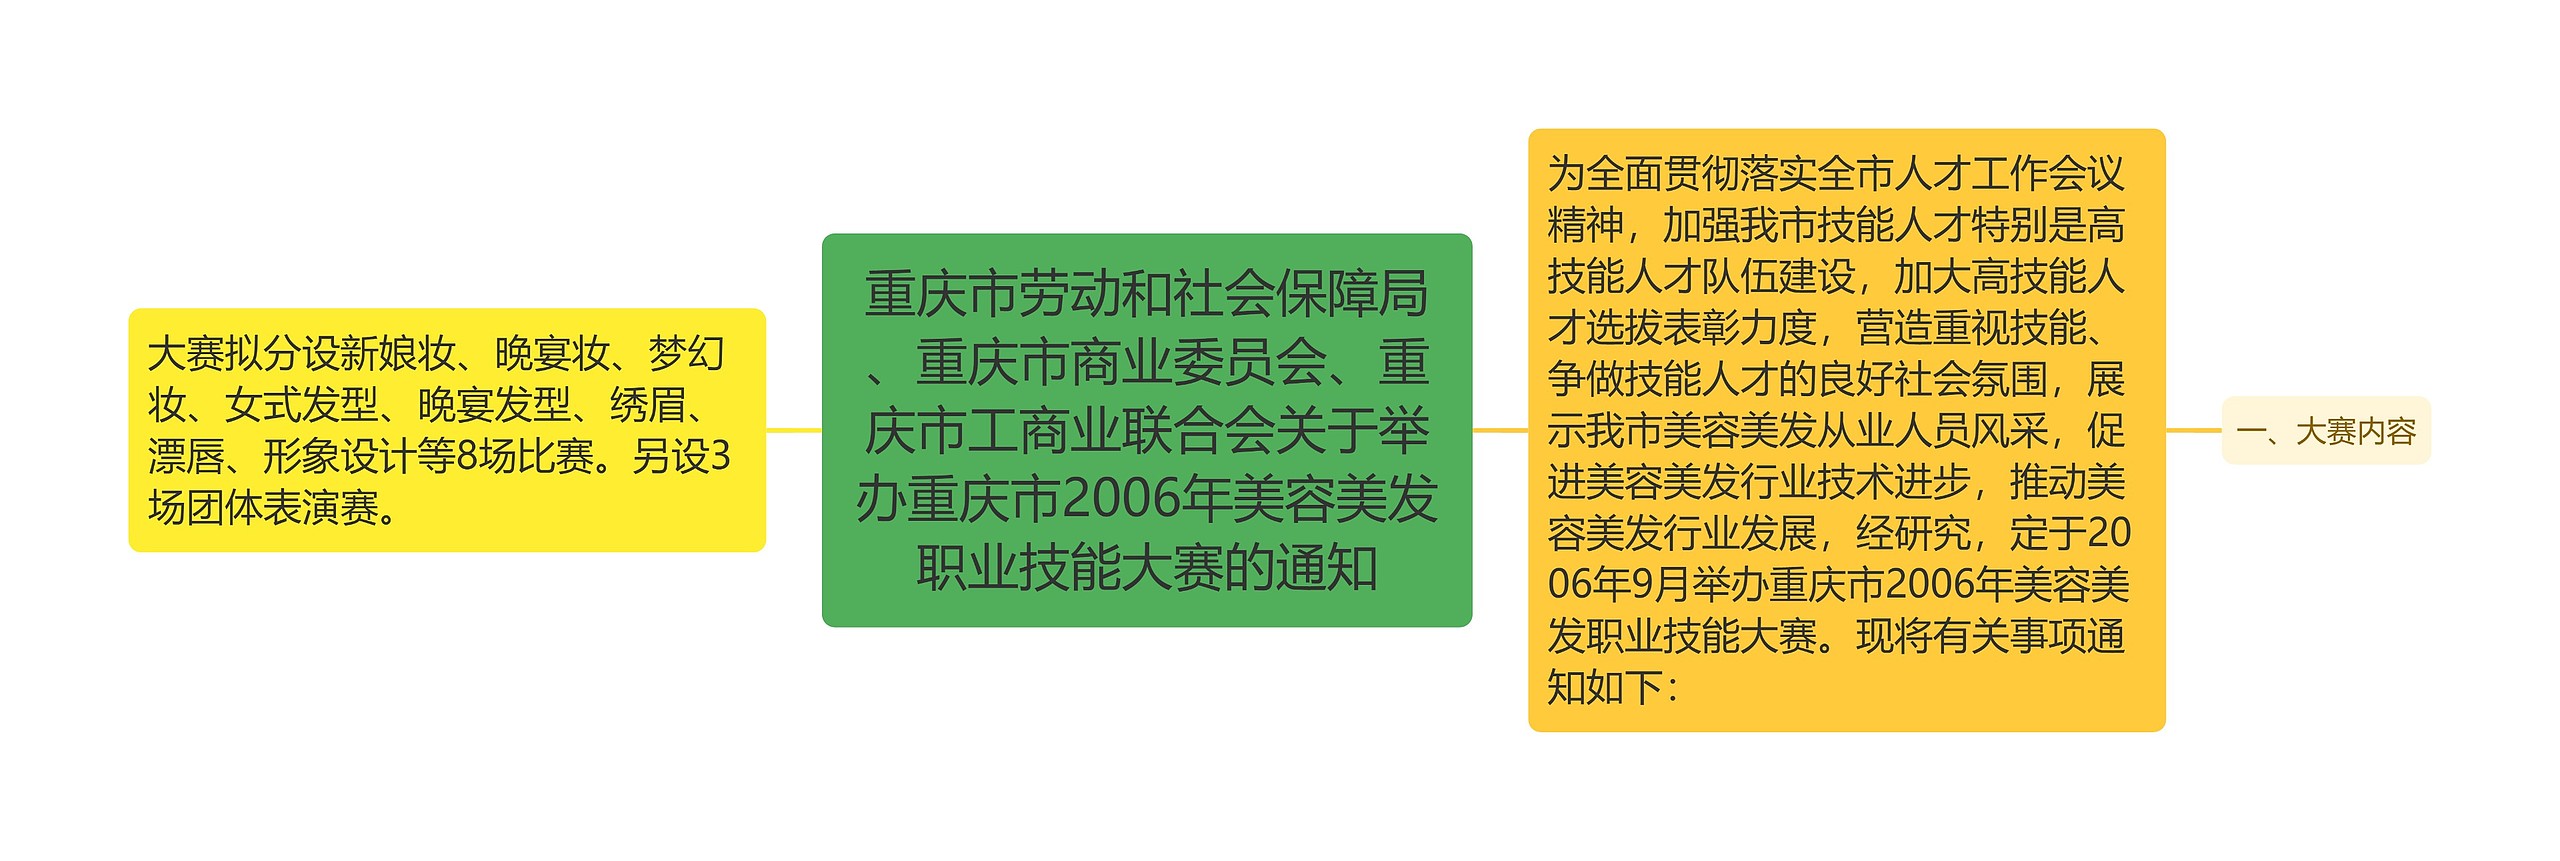 重庆市劳动和社会保障局、重庆市商业委员会、重庆市工商业联合会关于举办重庆市2006年美容美发职业技能大赛的通知